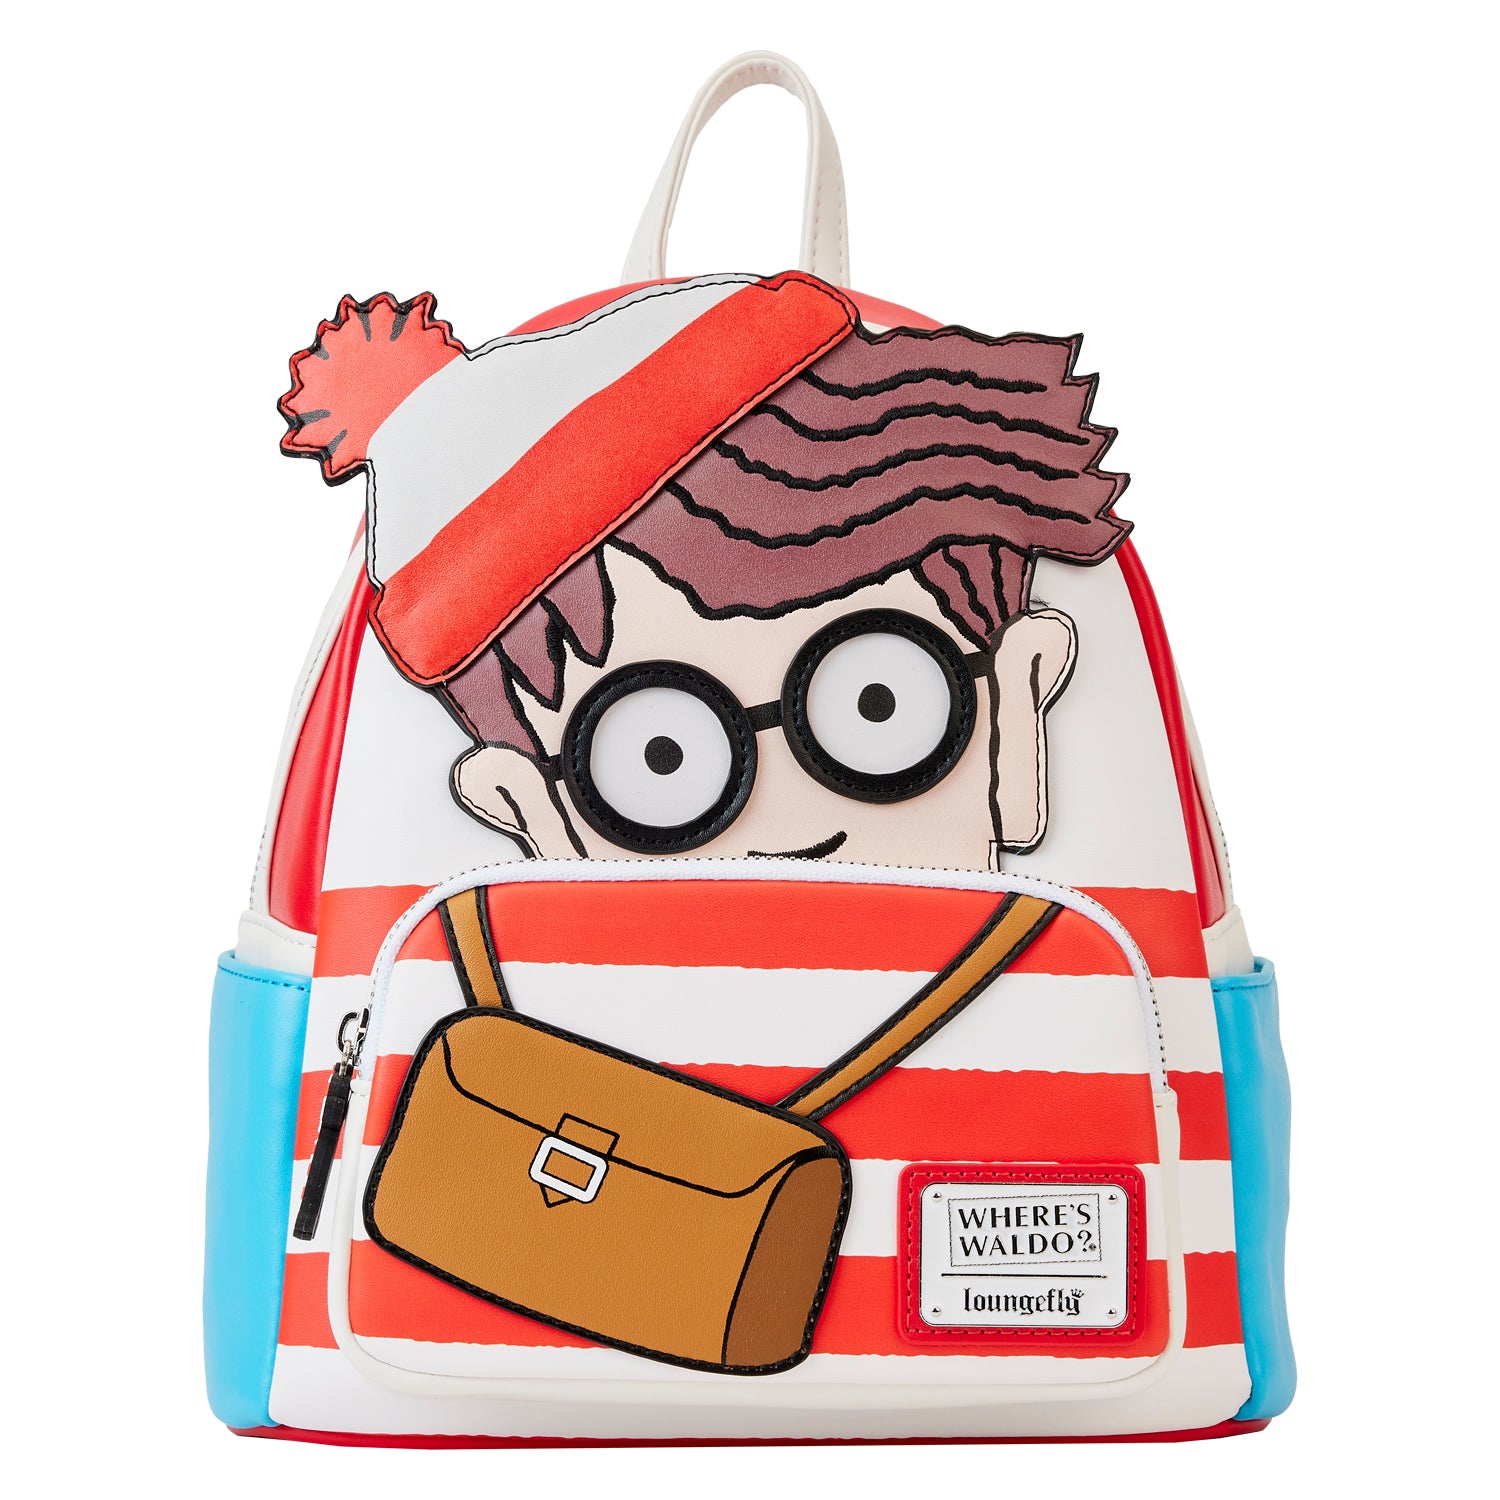 Loungefly Where's Waldo? Cosplay Mini Backpack